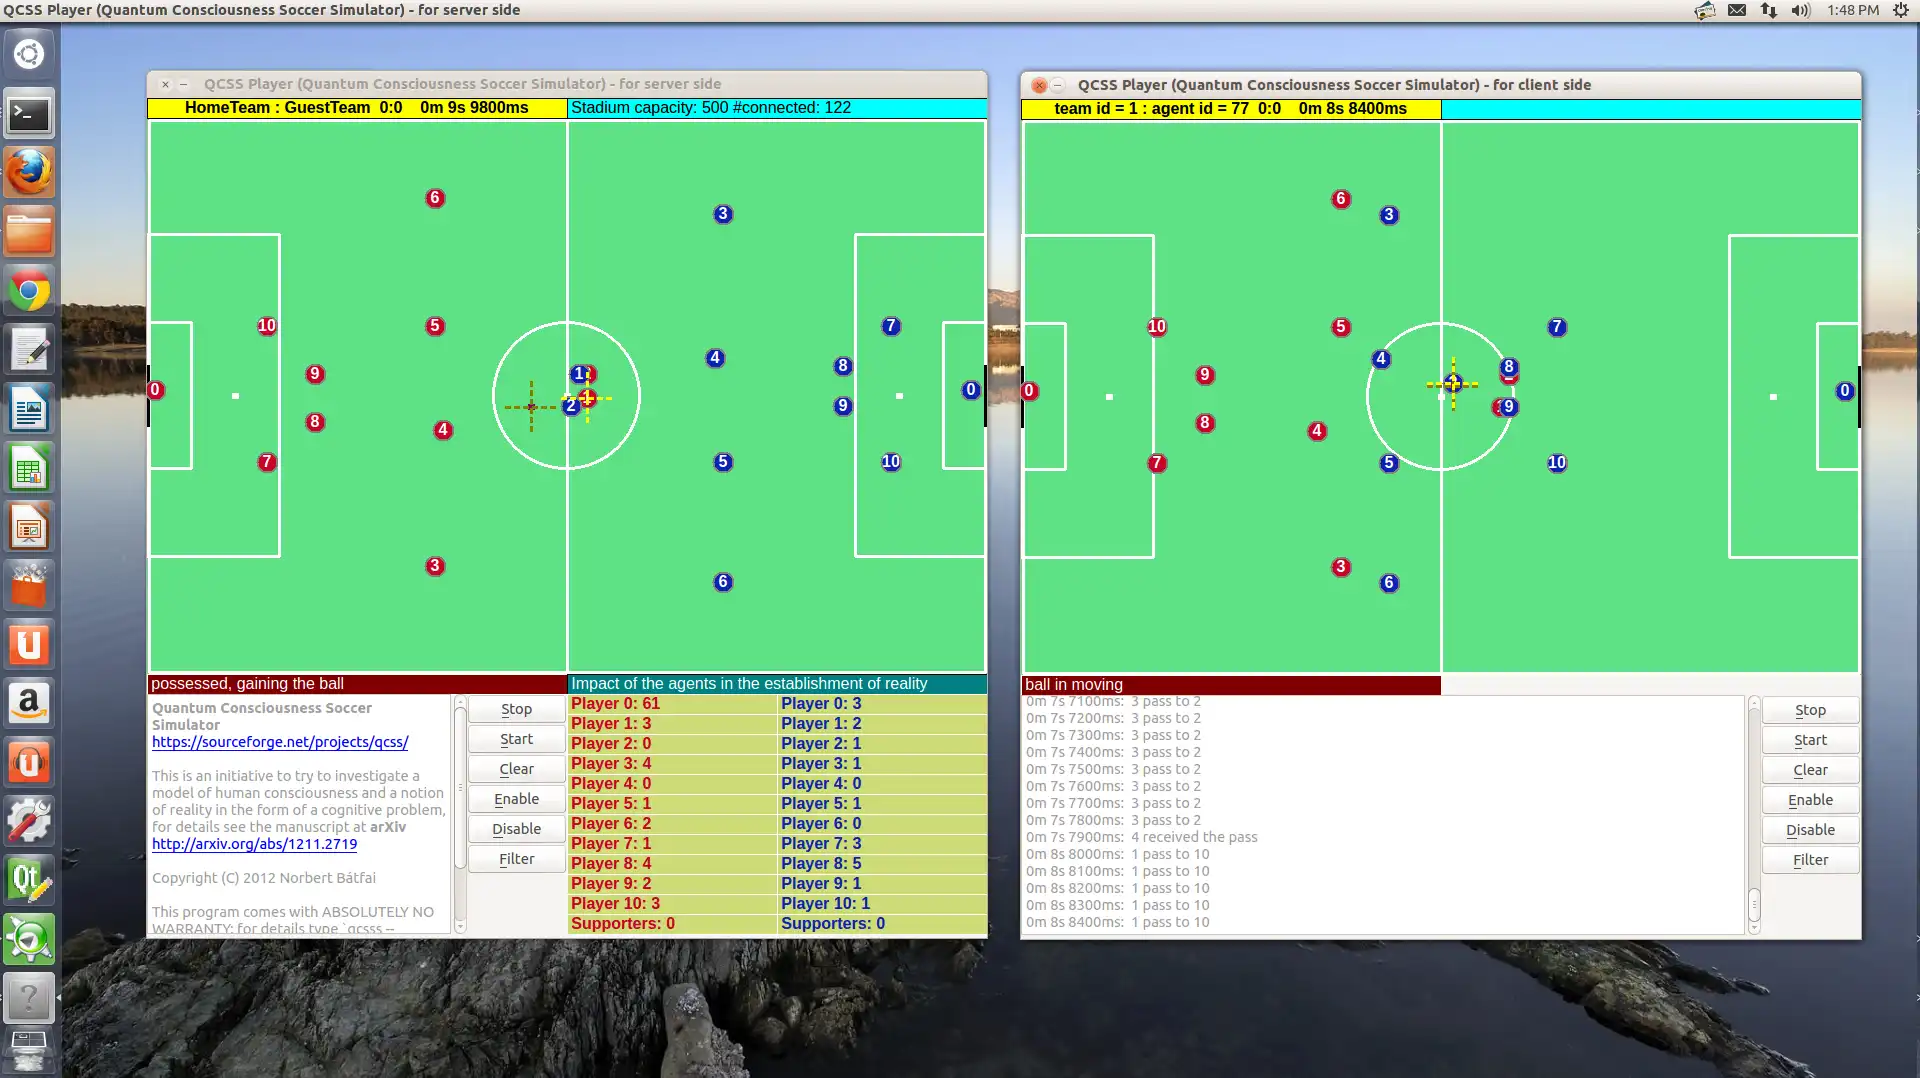 Descărcați instrumentul web sau aplicația web Quantum Consciousness Soccer Simulator pentru a rula online în Linux